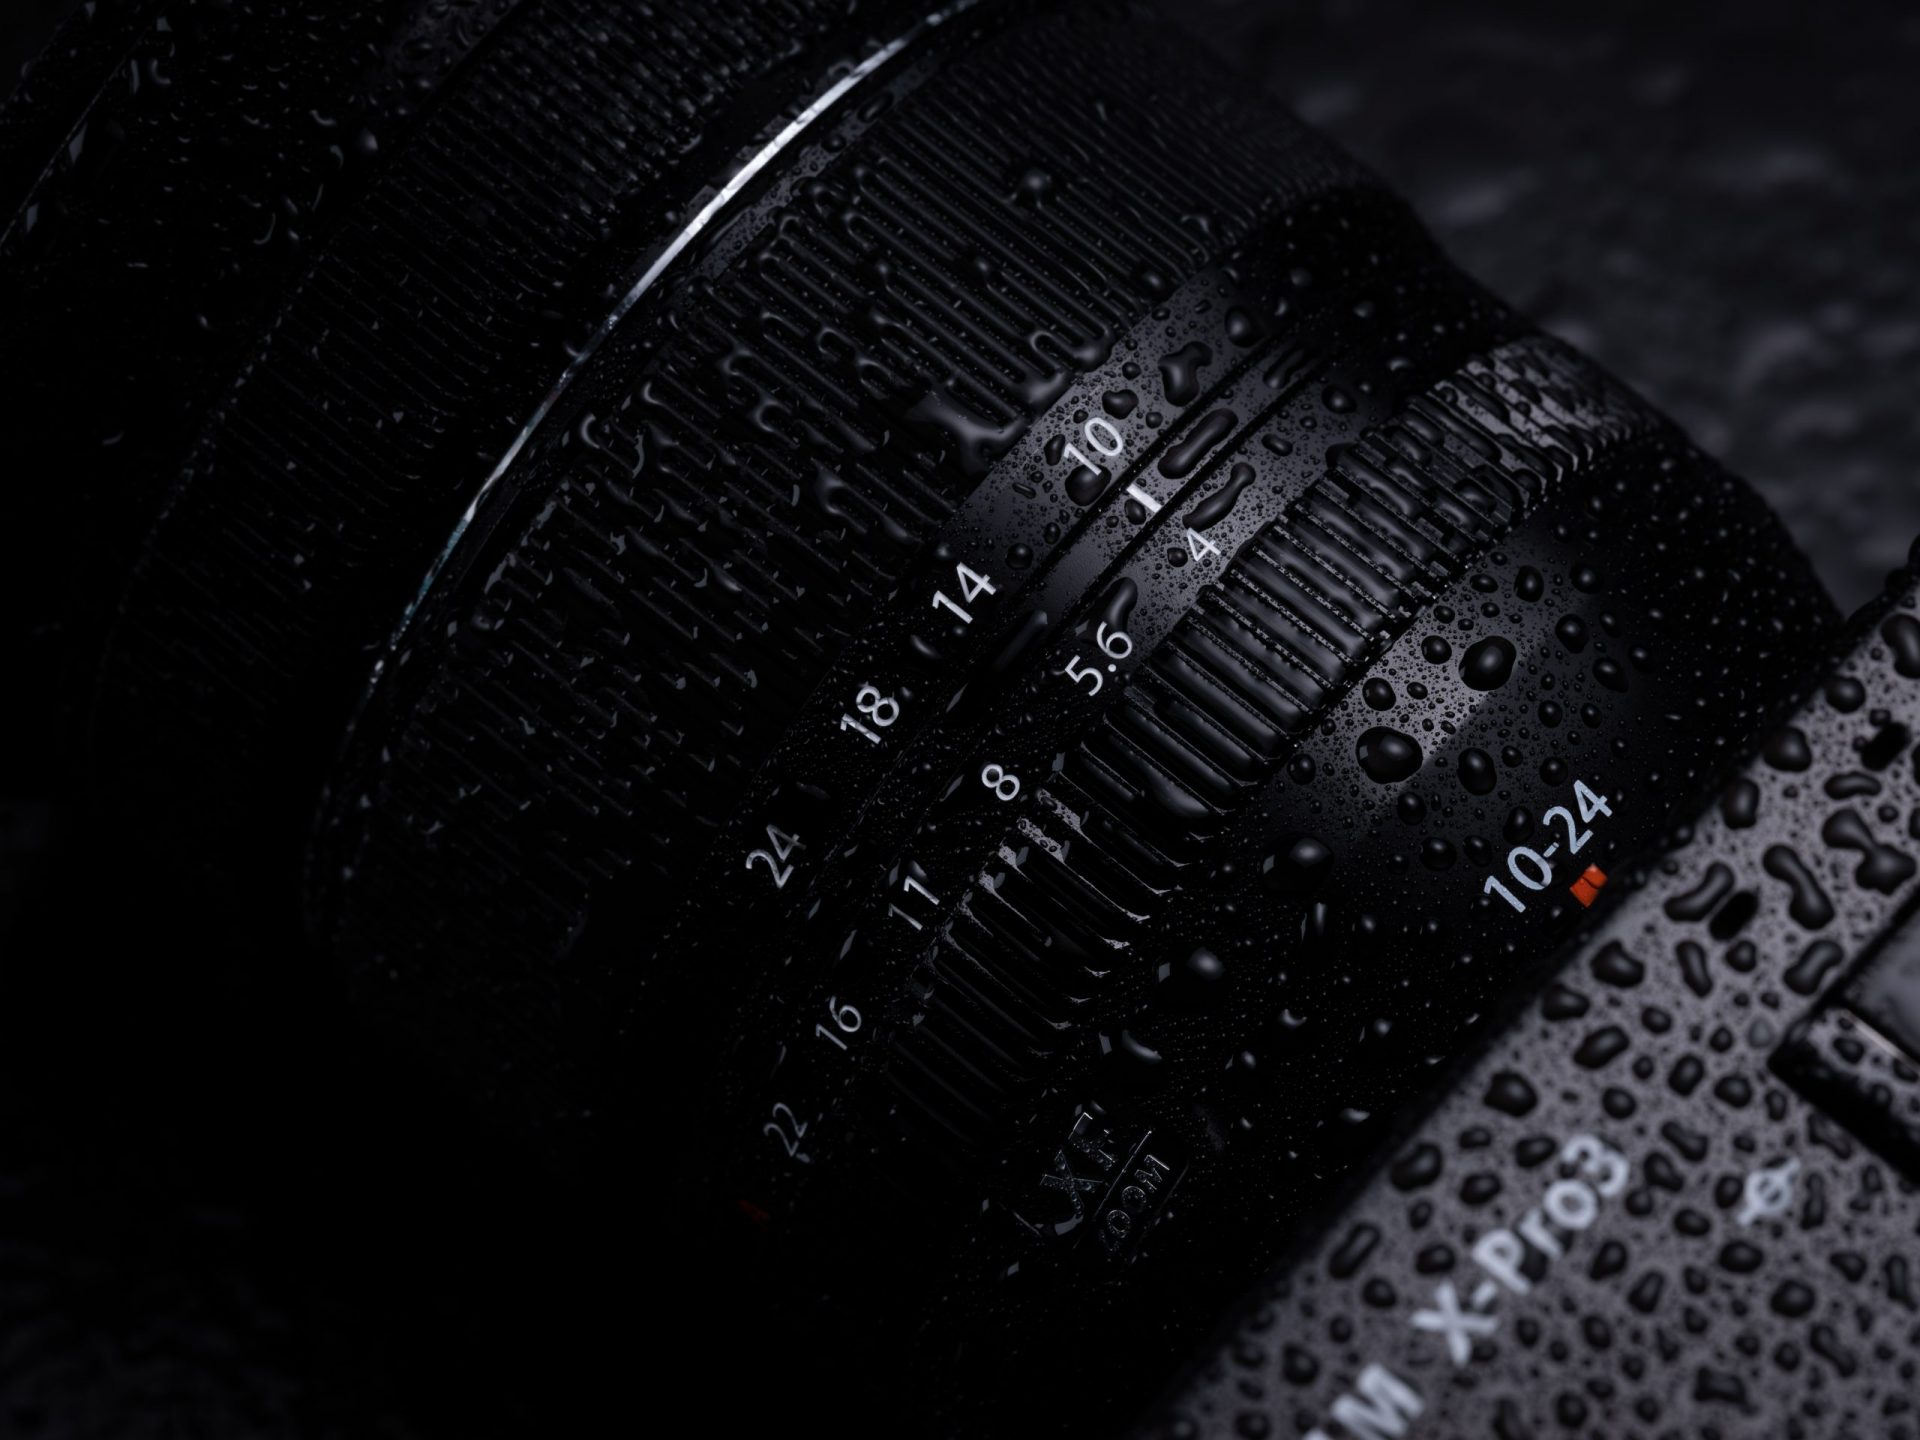 Fujifilm ra mắt ống kính Fujinon XF 10-24mm F4 R OIS WR, cải tiến quang học, bổ sung chống thời tiết